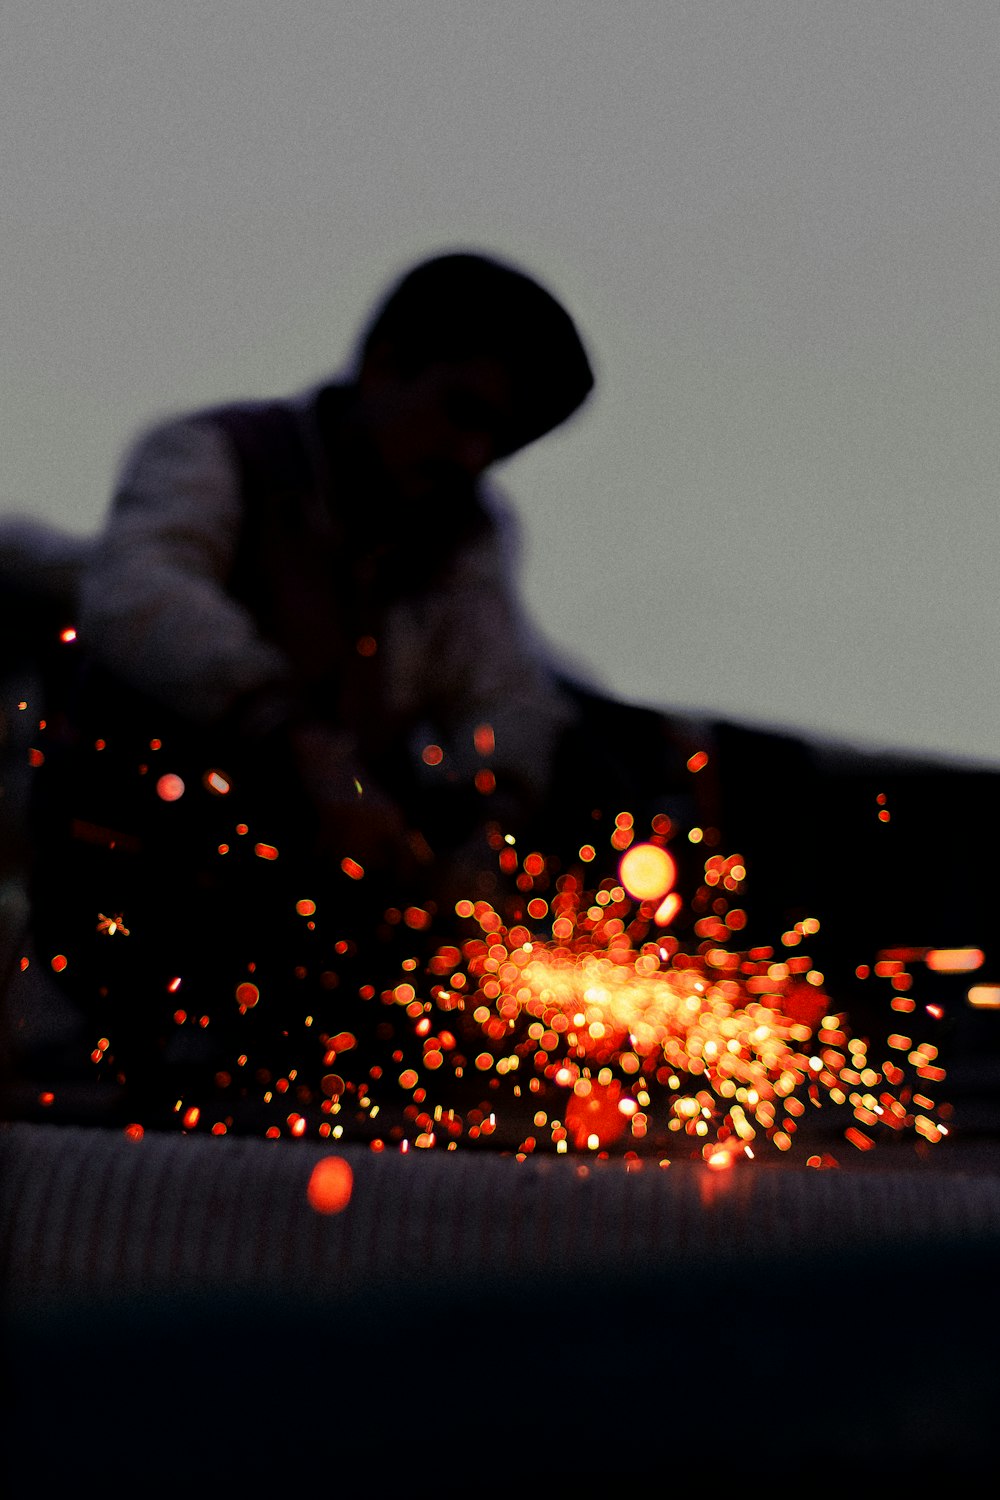 Un hombre trabajando en una pieza de metal